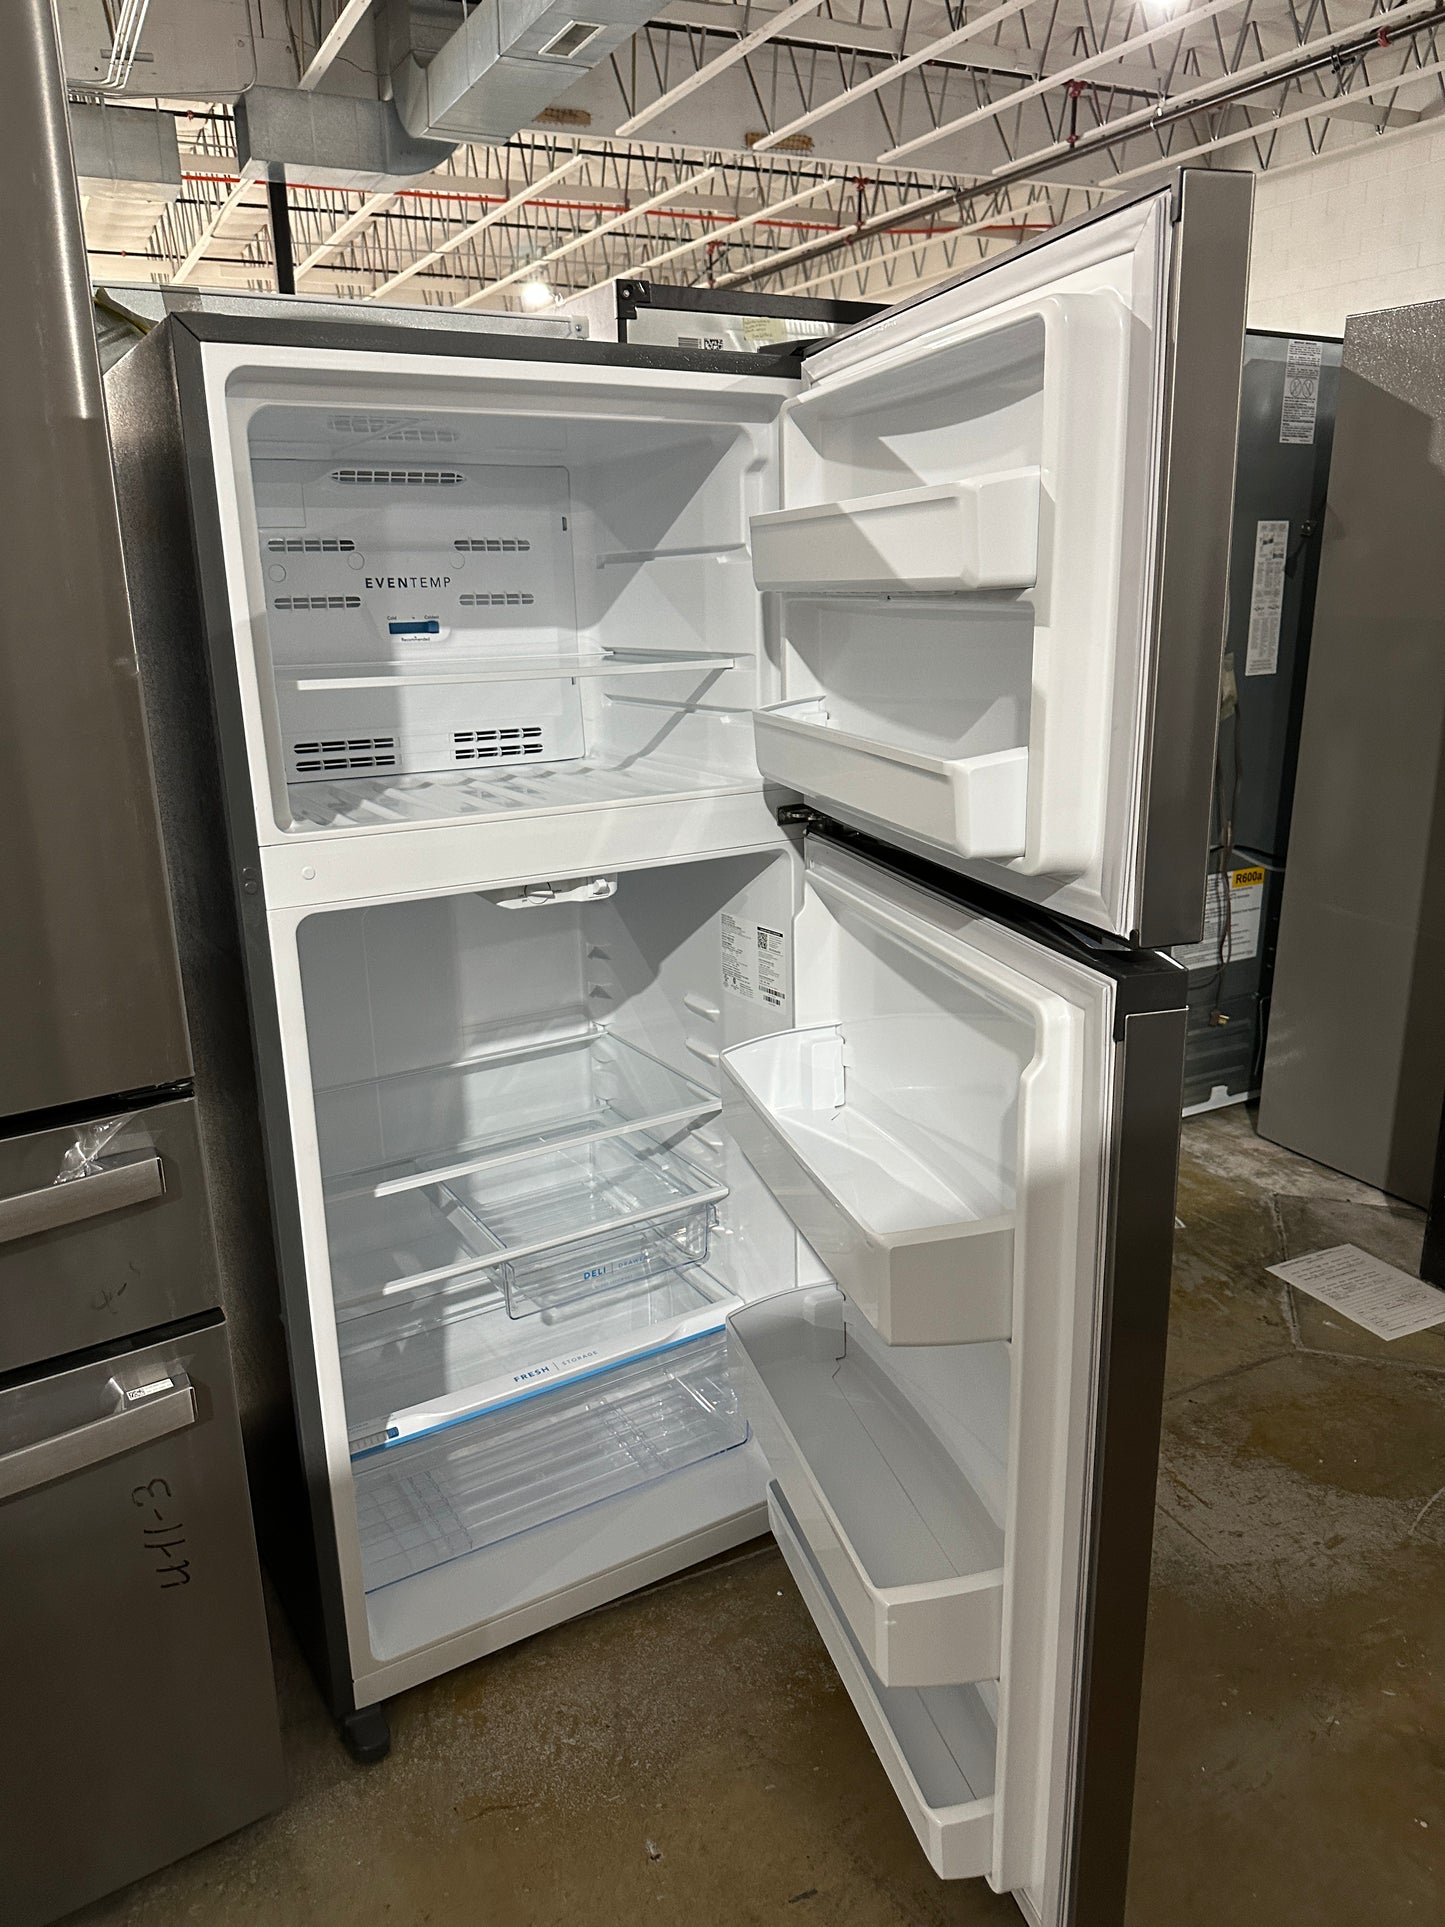 13.9 Cu. Ft. Top-Freezer Refrigerator - Brushed Steel  MODEL: FFHT1425VV05  REF12270S